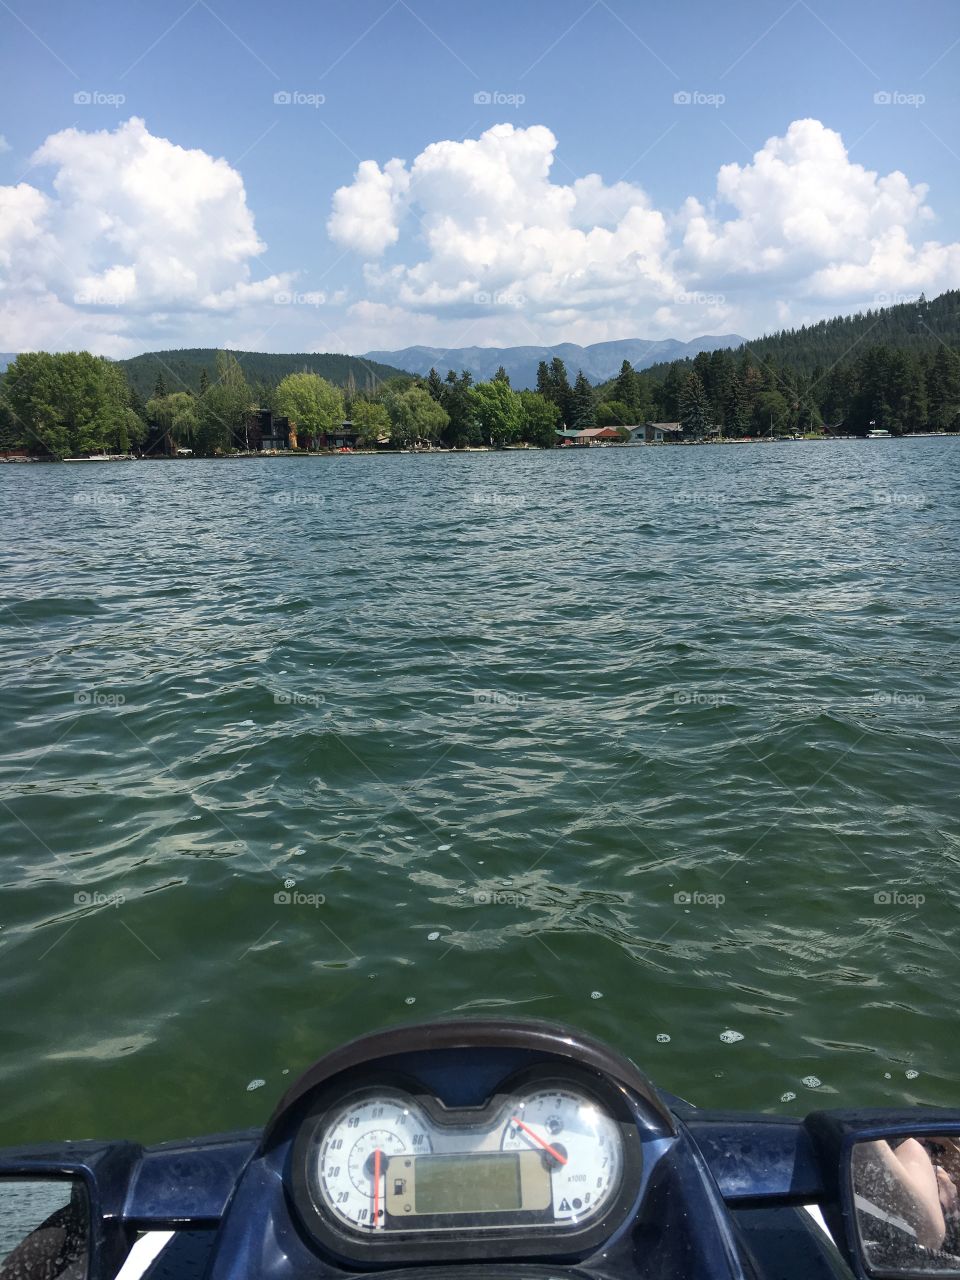 Jet ski on a lake 